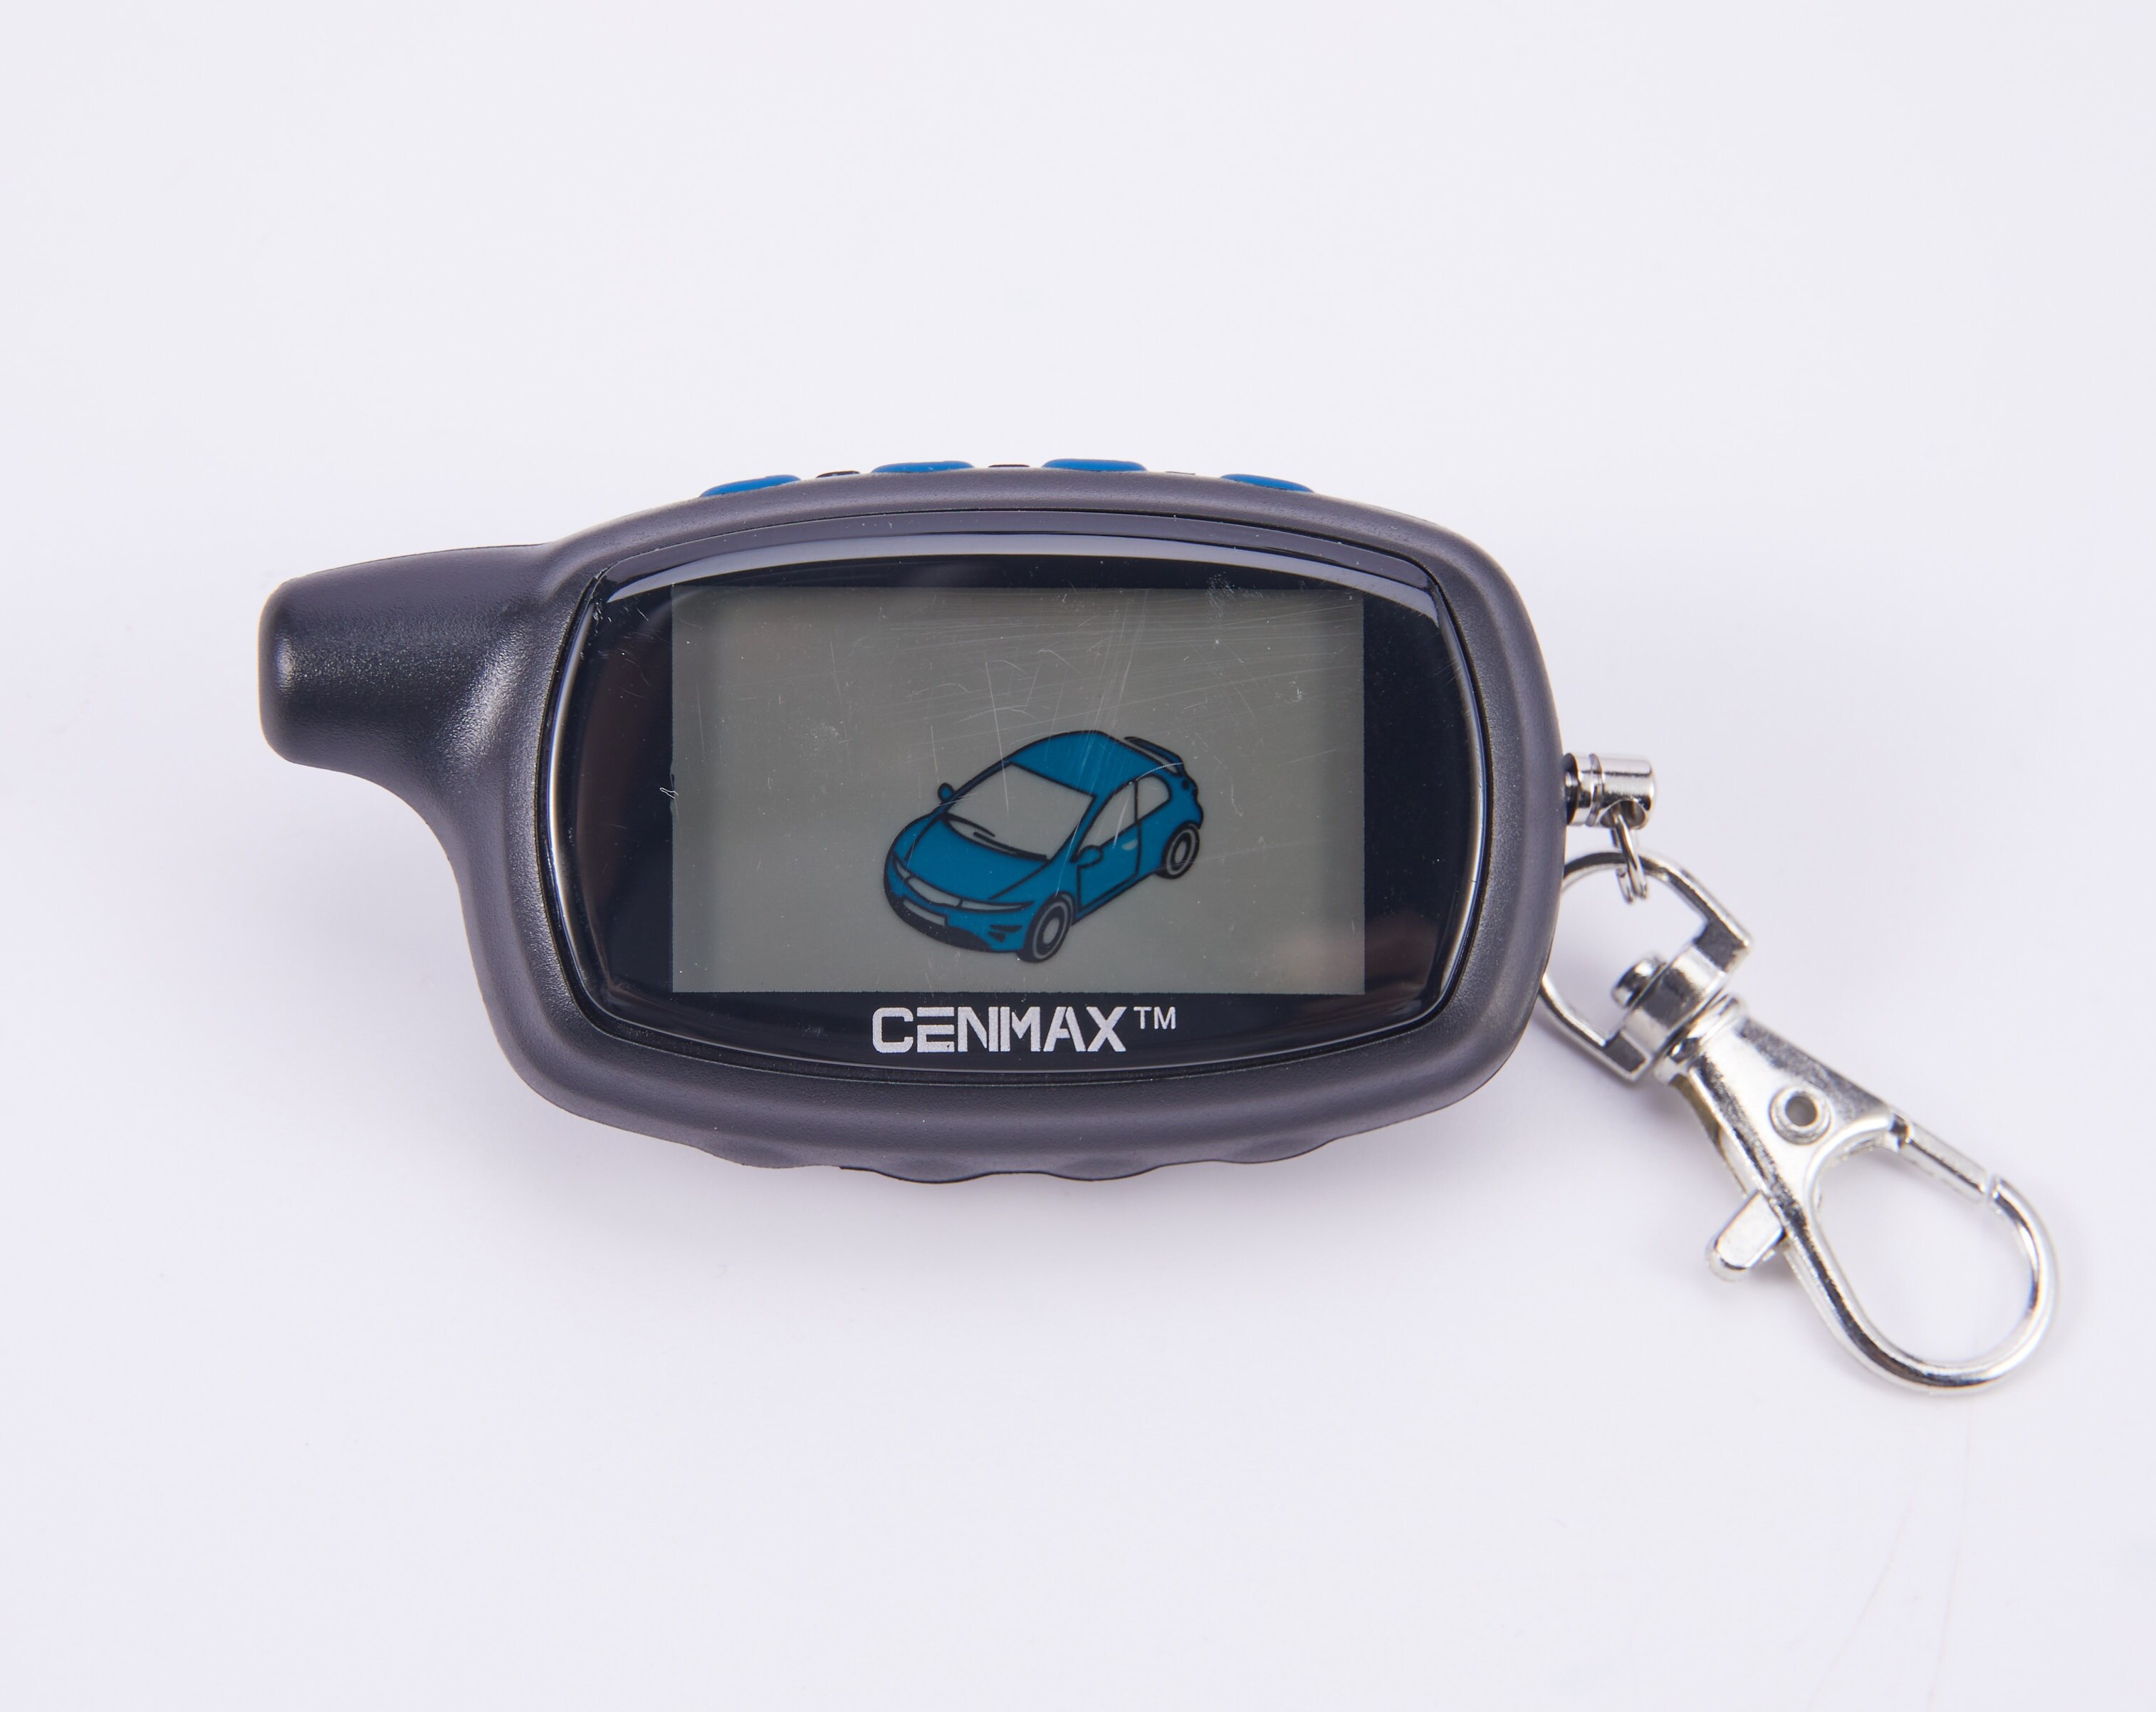 Cenmax ST-7A Russische Versie Lcd Afstandsbediening Voor 7A Lcd Sleutelhanger Auto Afstandsbediening 2-Weg Auto Alarm Systeem/am Zender